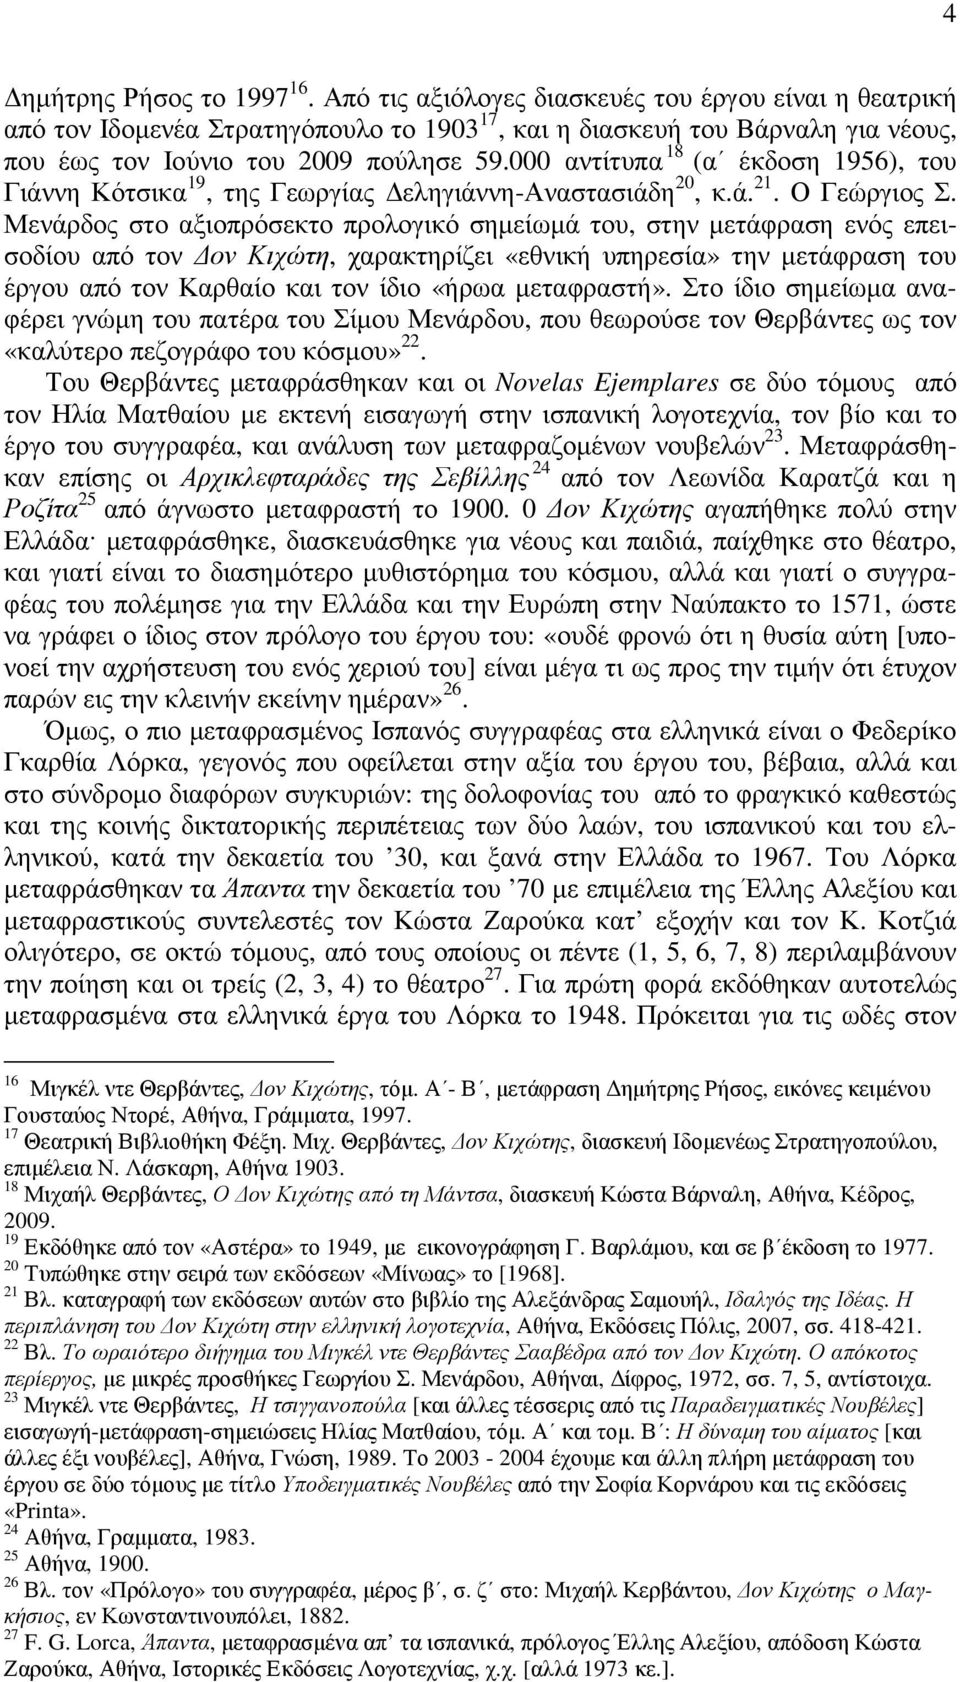 000 αντίτυπα 18 (α έκδοση 1956), του Γιάννη Κότσικα 19, της Γεωργίας εληγιάννη-αναστασιάδη 20, κ.ά. 21. Ο Γεώργιος Σ.